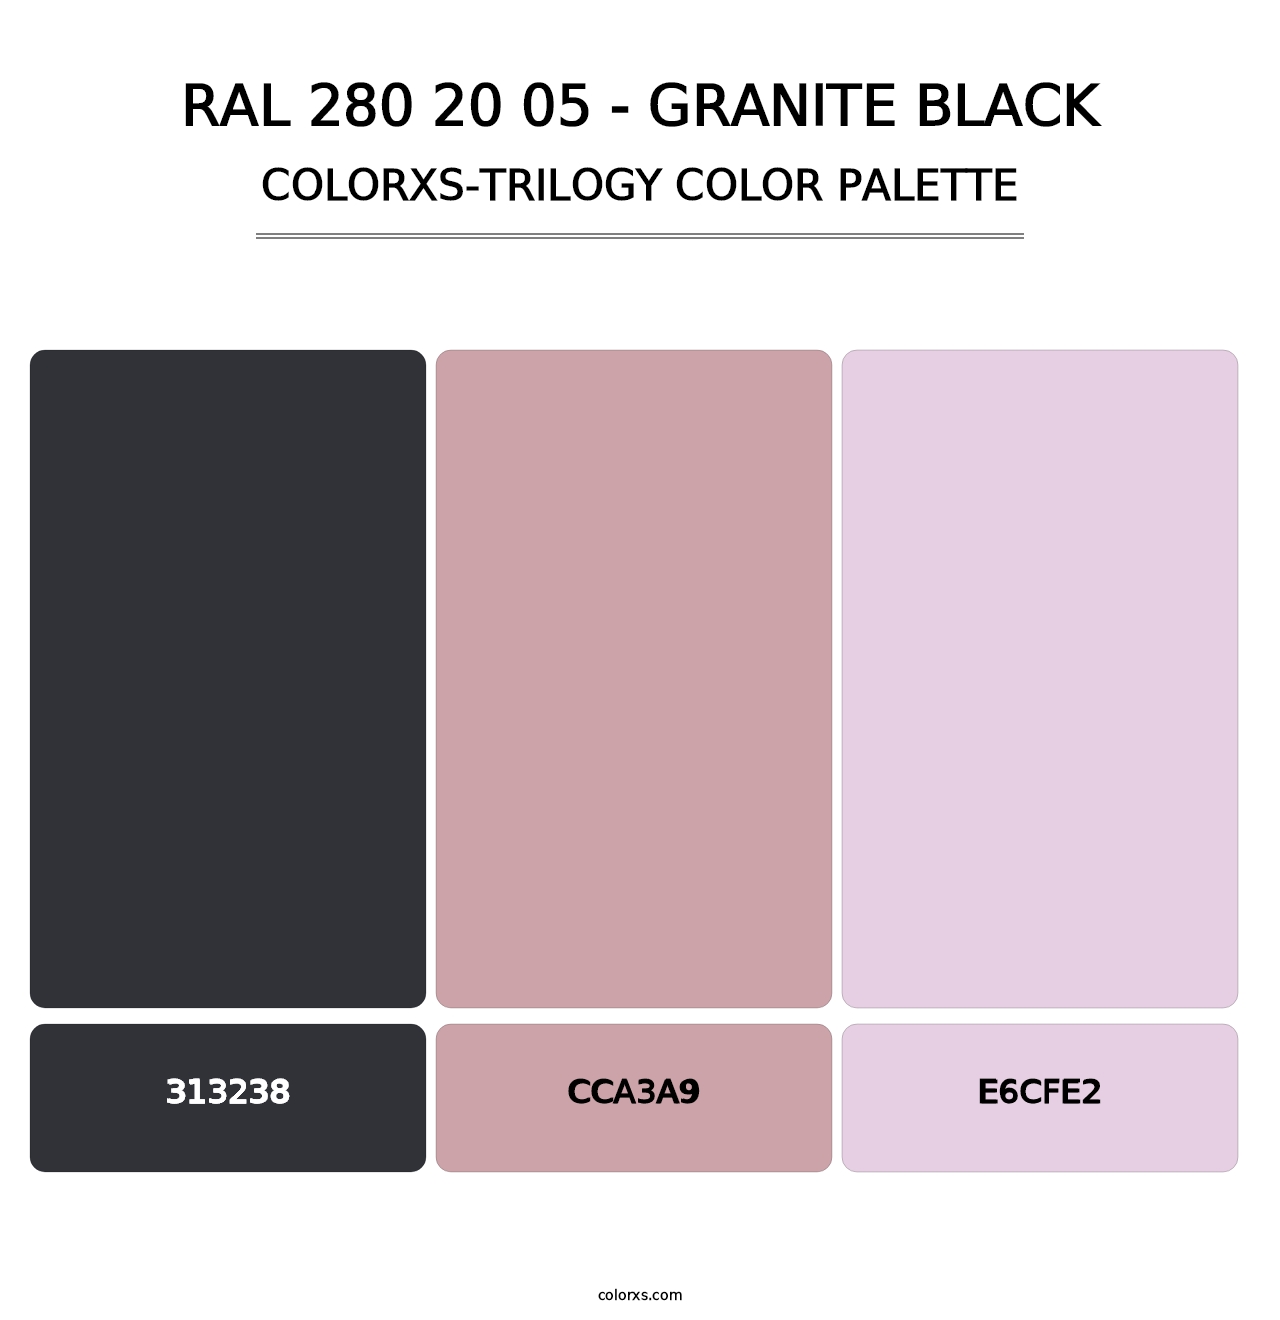 RAL 280 20 05 - Granite Black - Colorxs Trilogy Palette